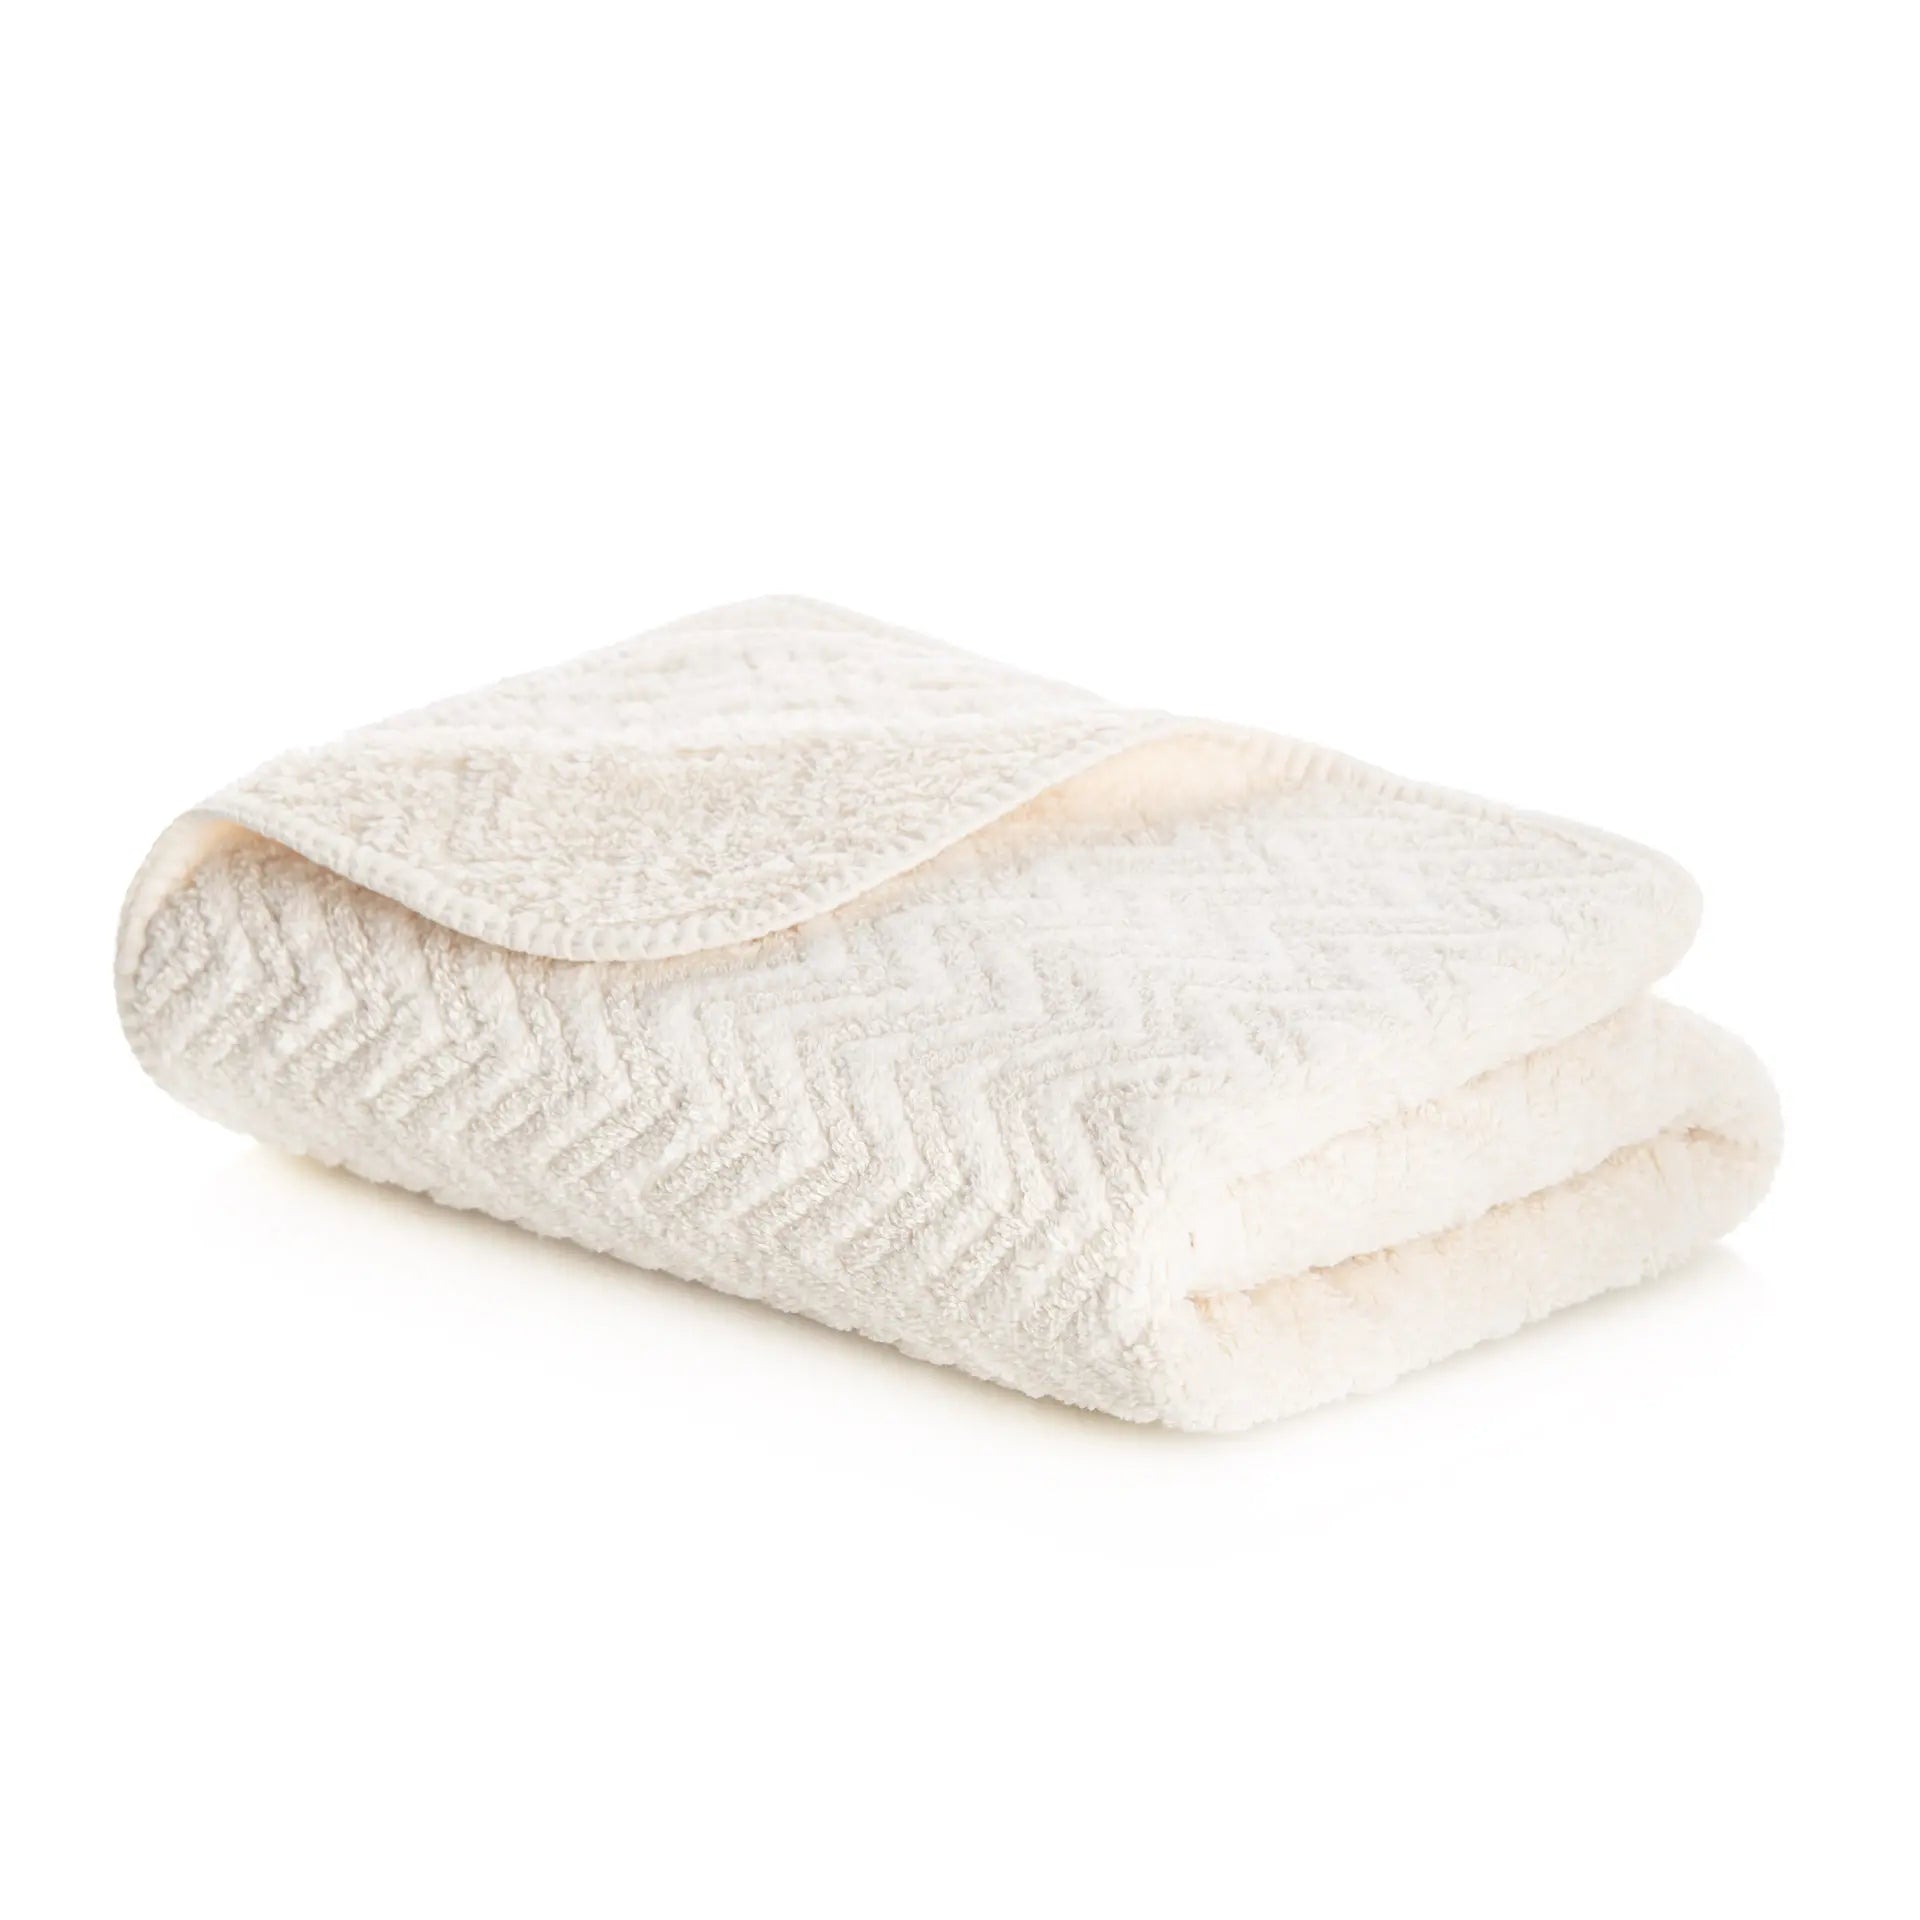 Graccioza Hamilton Towel in Natural